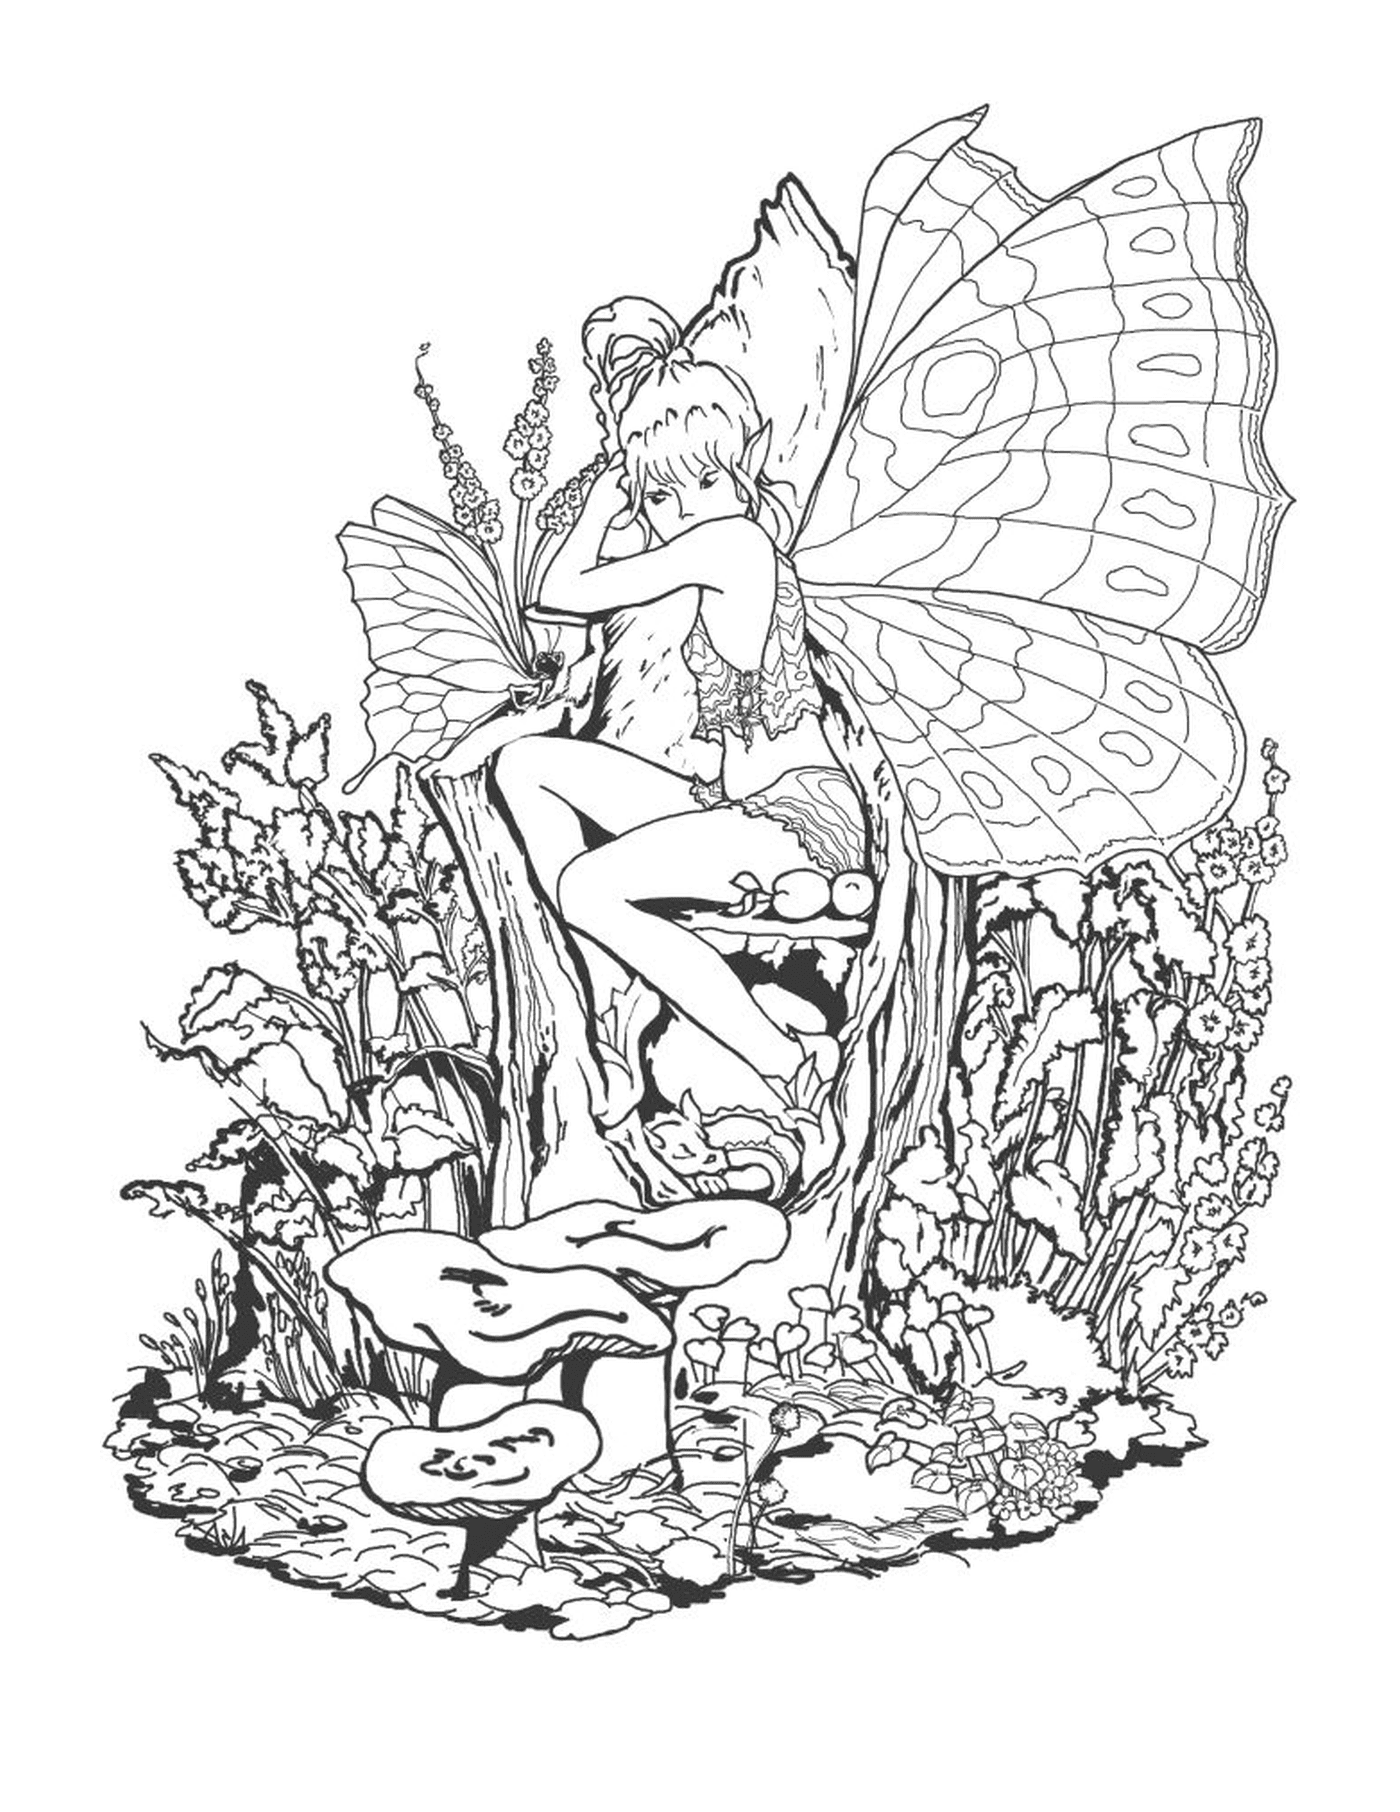  一个仙女坐在蘑菇上 手里拿着蝴蝶的仙女 